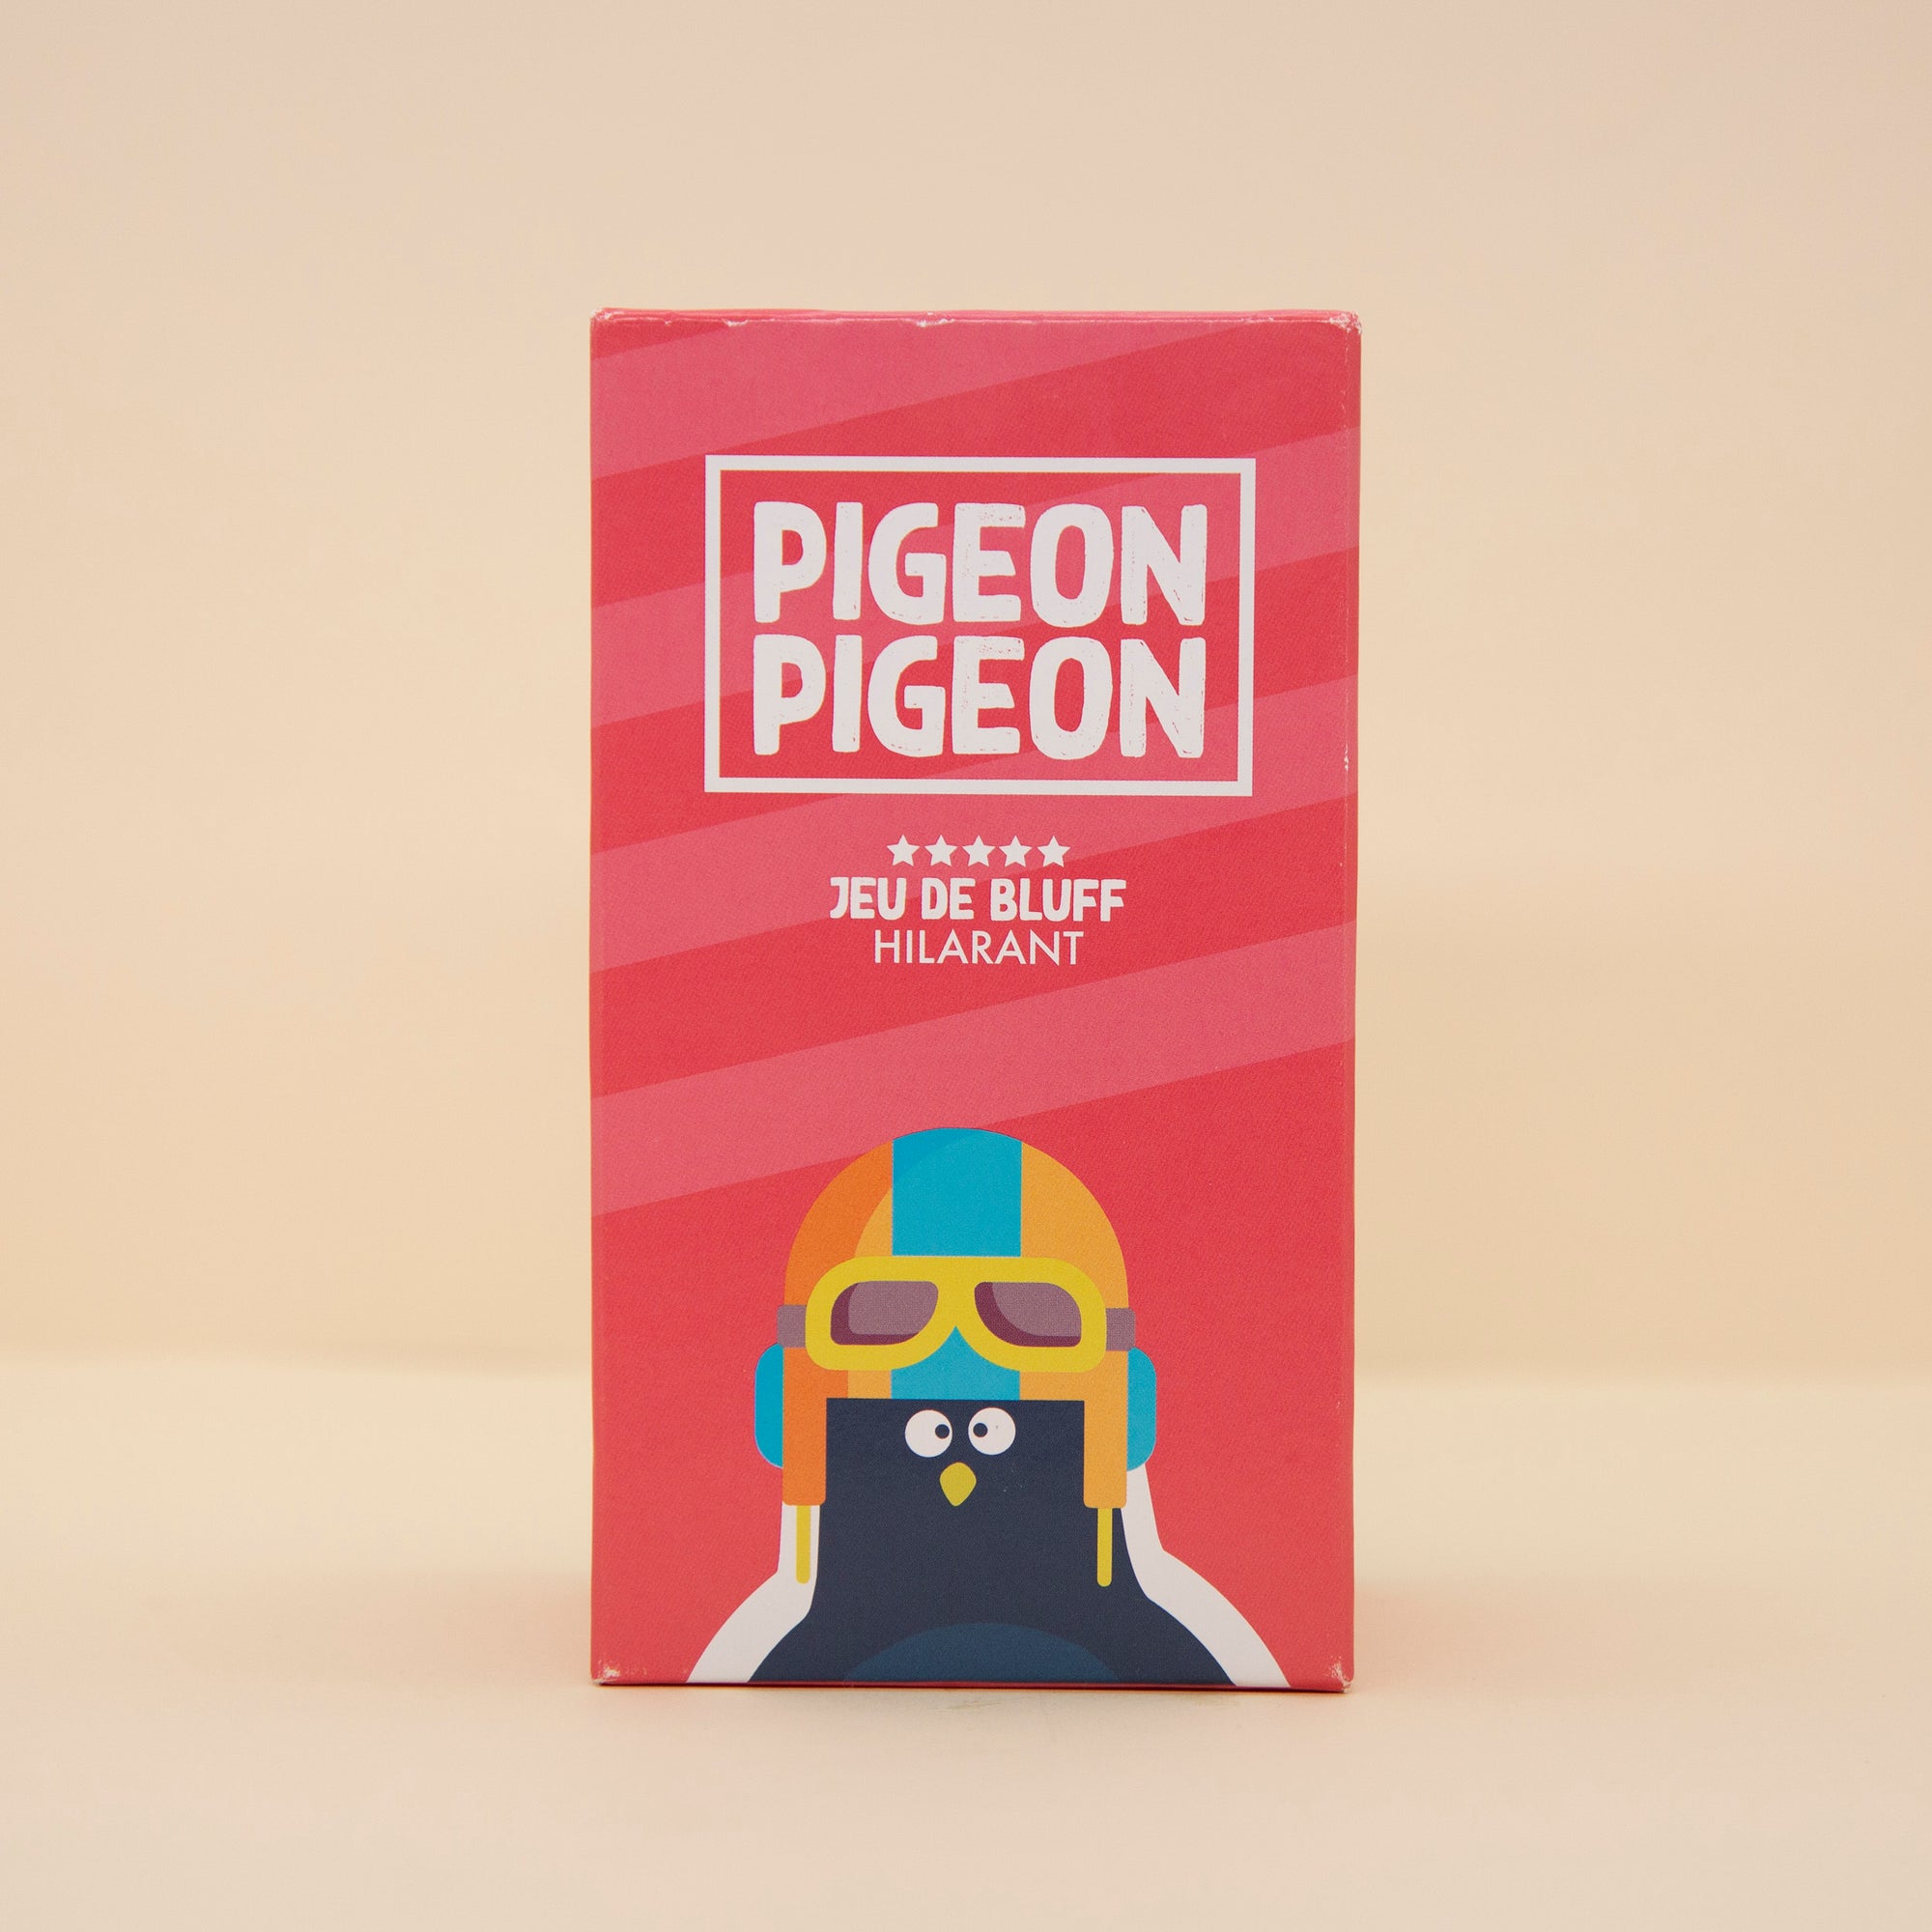 Pigeon Pigeon – L'effet PAP boutiques